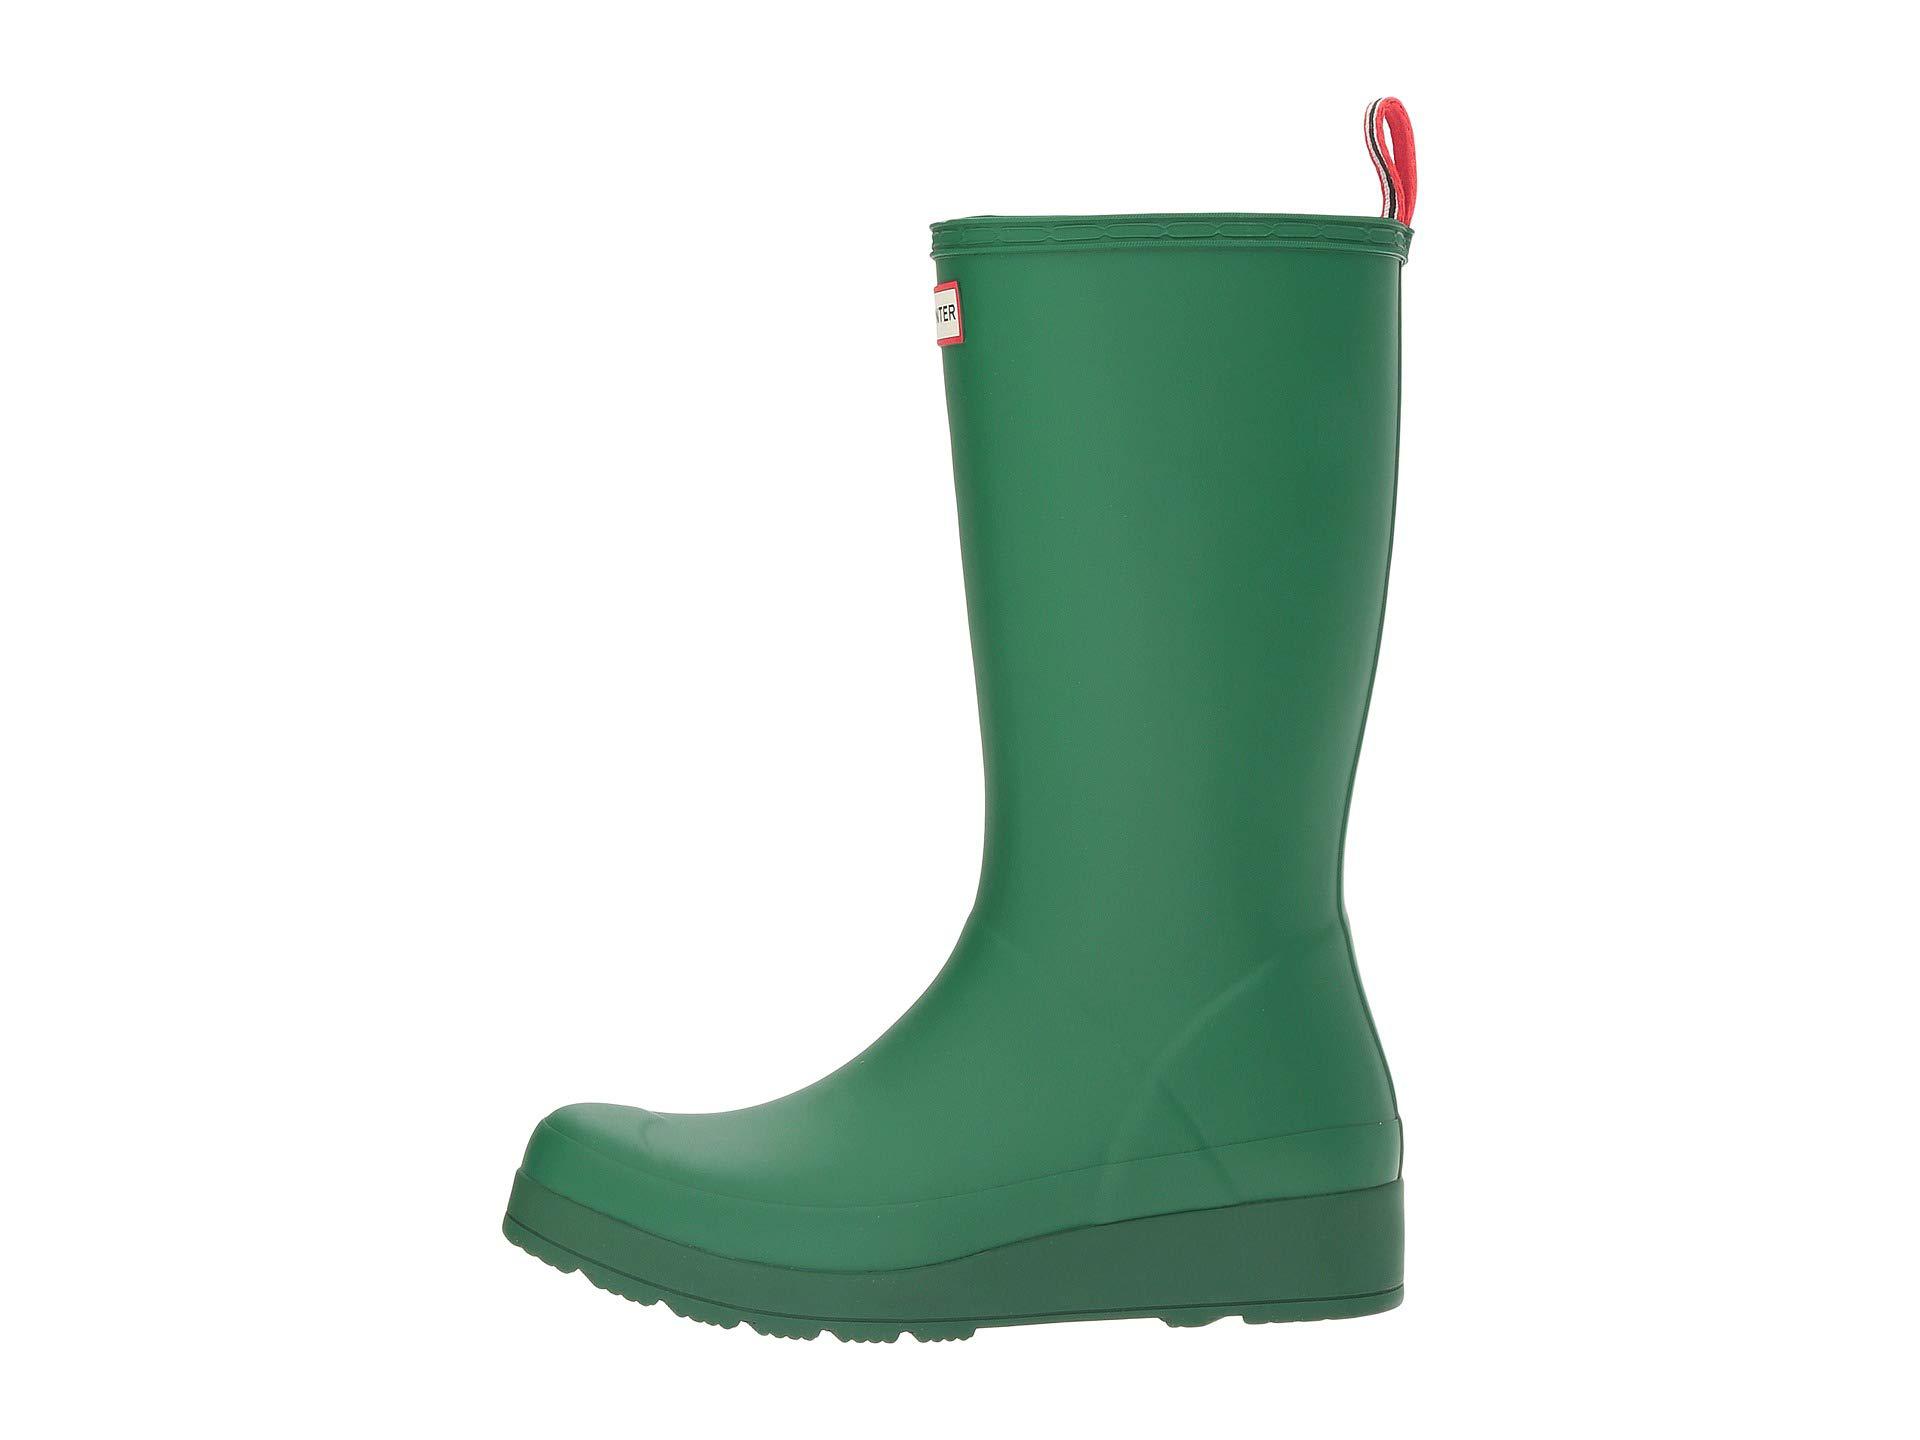 Lyst - Hunter Original Play Boot Tall Rain Boots (hyper Green) Women's Rain Boots in Green